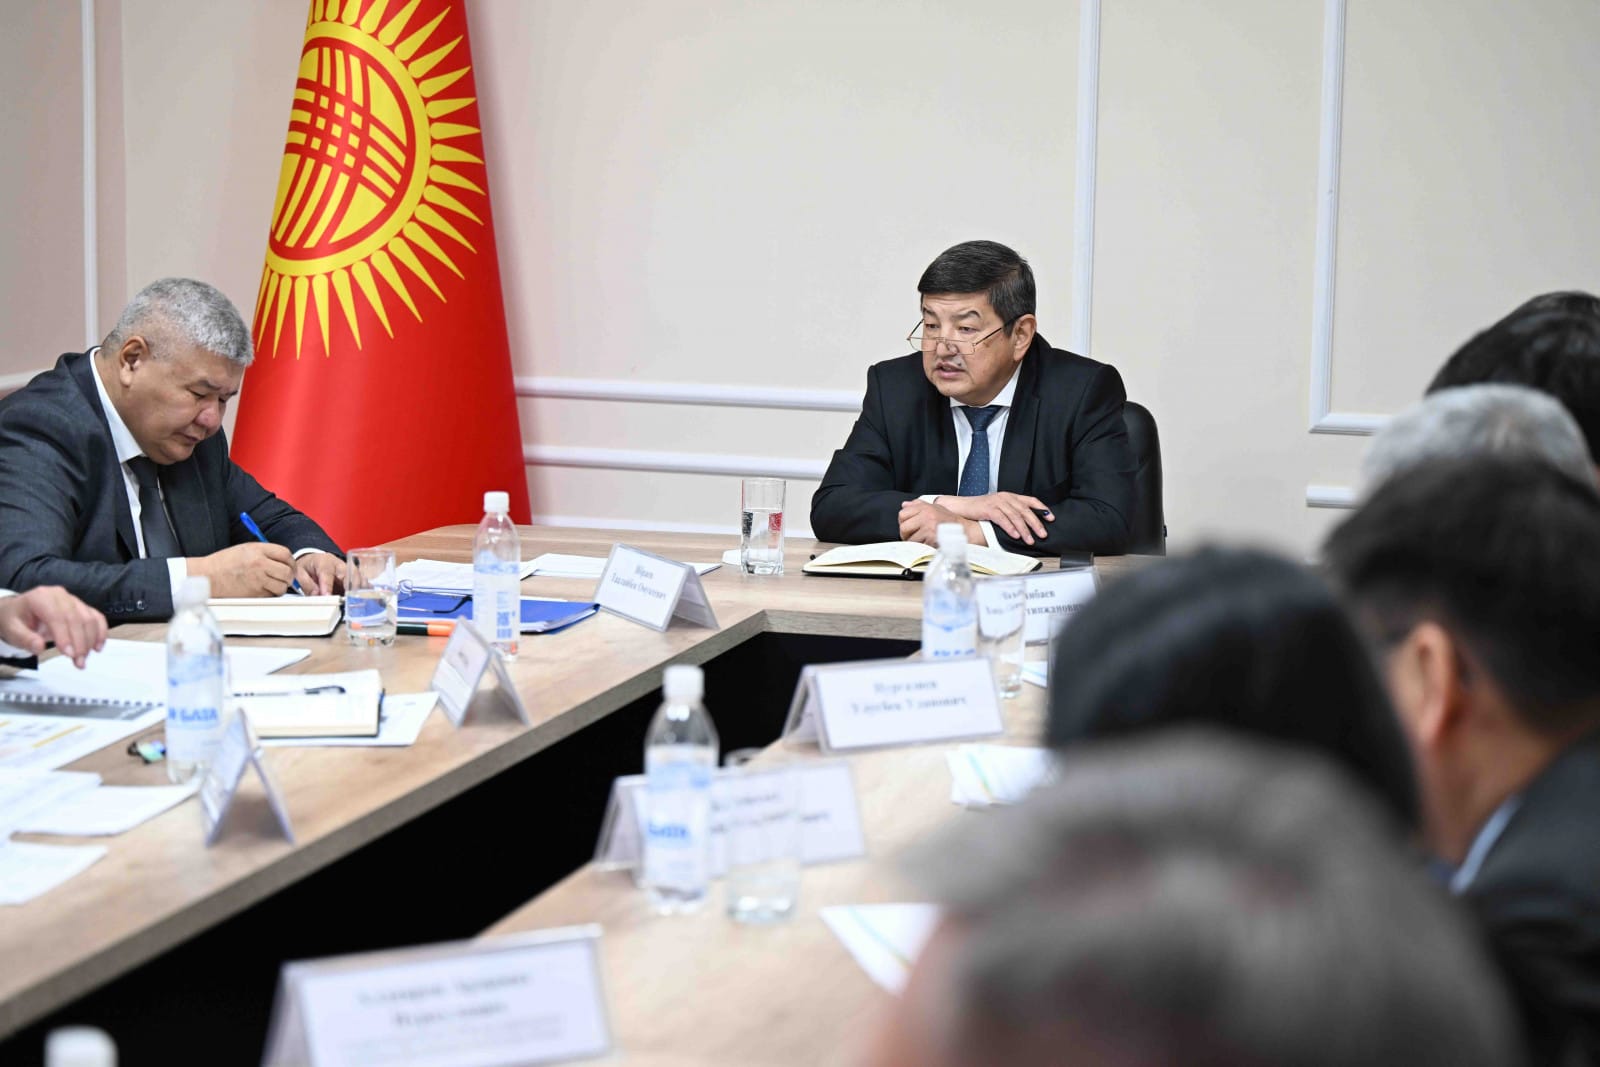 Акылбеку Жапарову представили четыре варианта модернизации ТЭЦ Бишкека